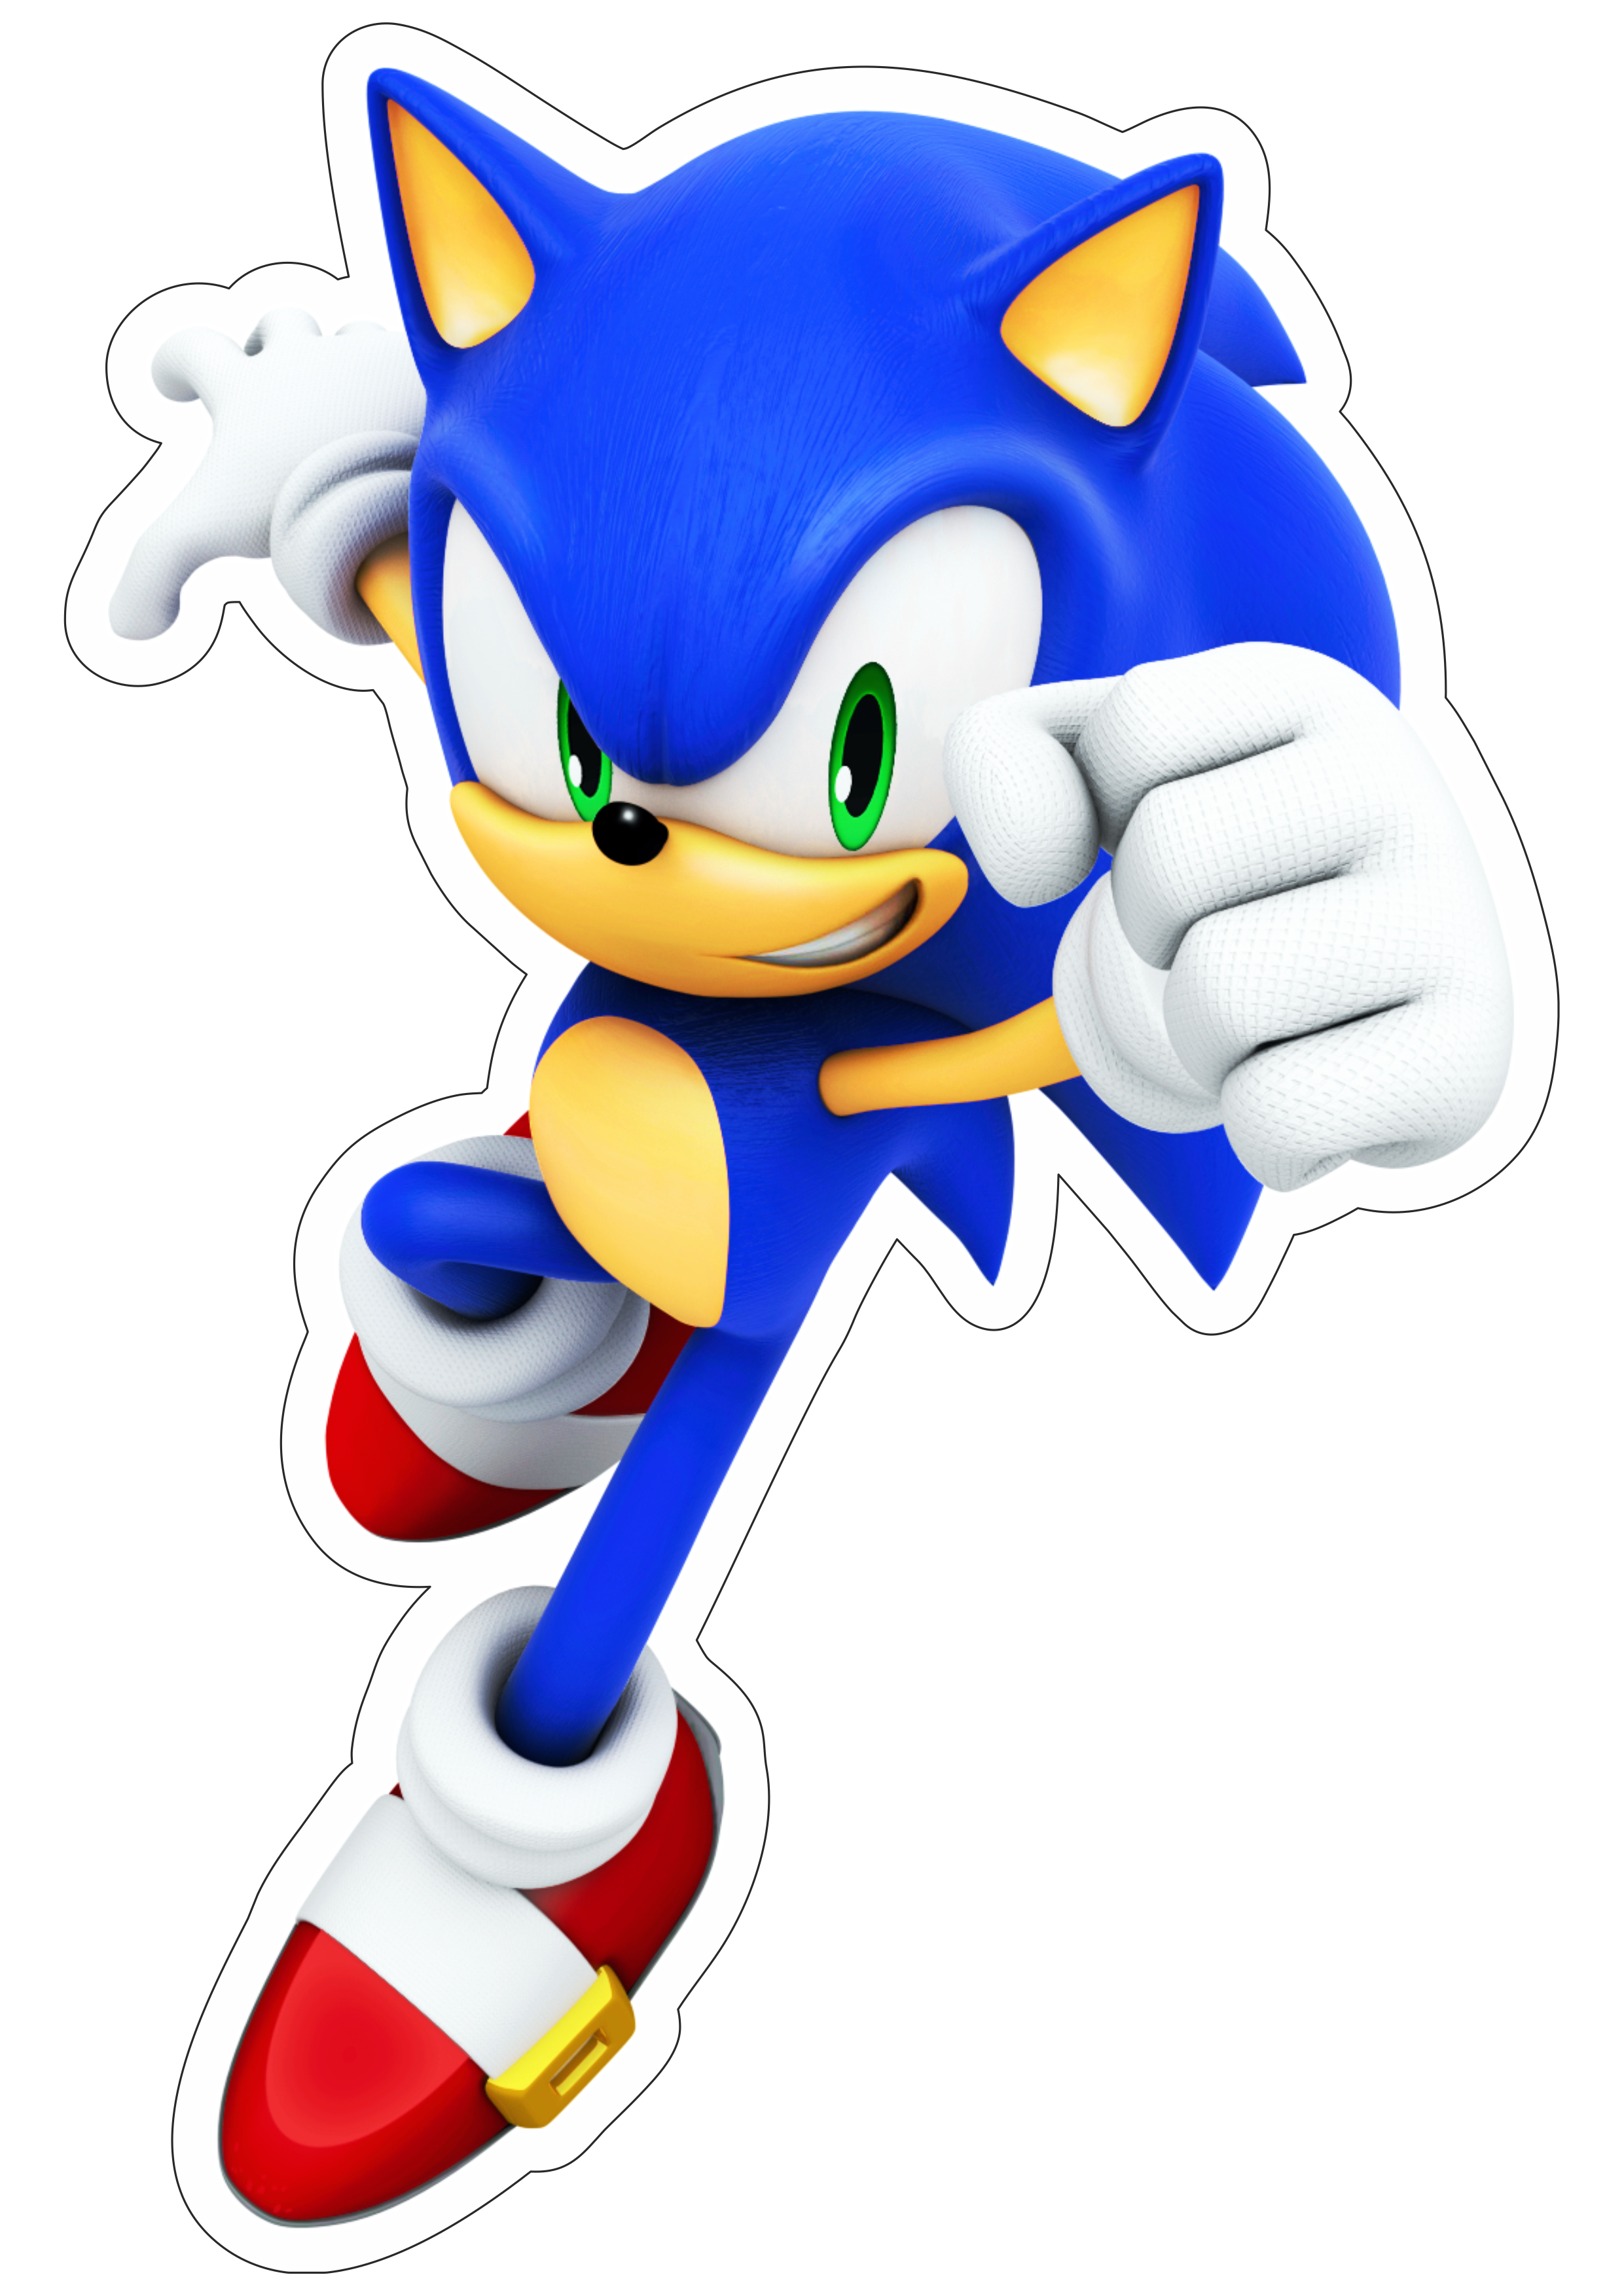 Sonic the hedgehog personagem de game aventura infantil sega imagem sem fundo com contorno artes gráficas artigos de papelaria png